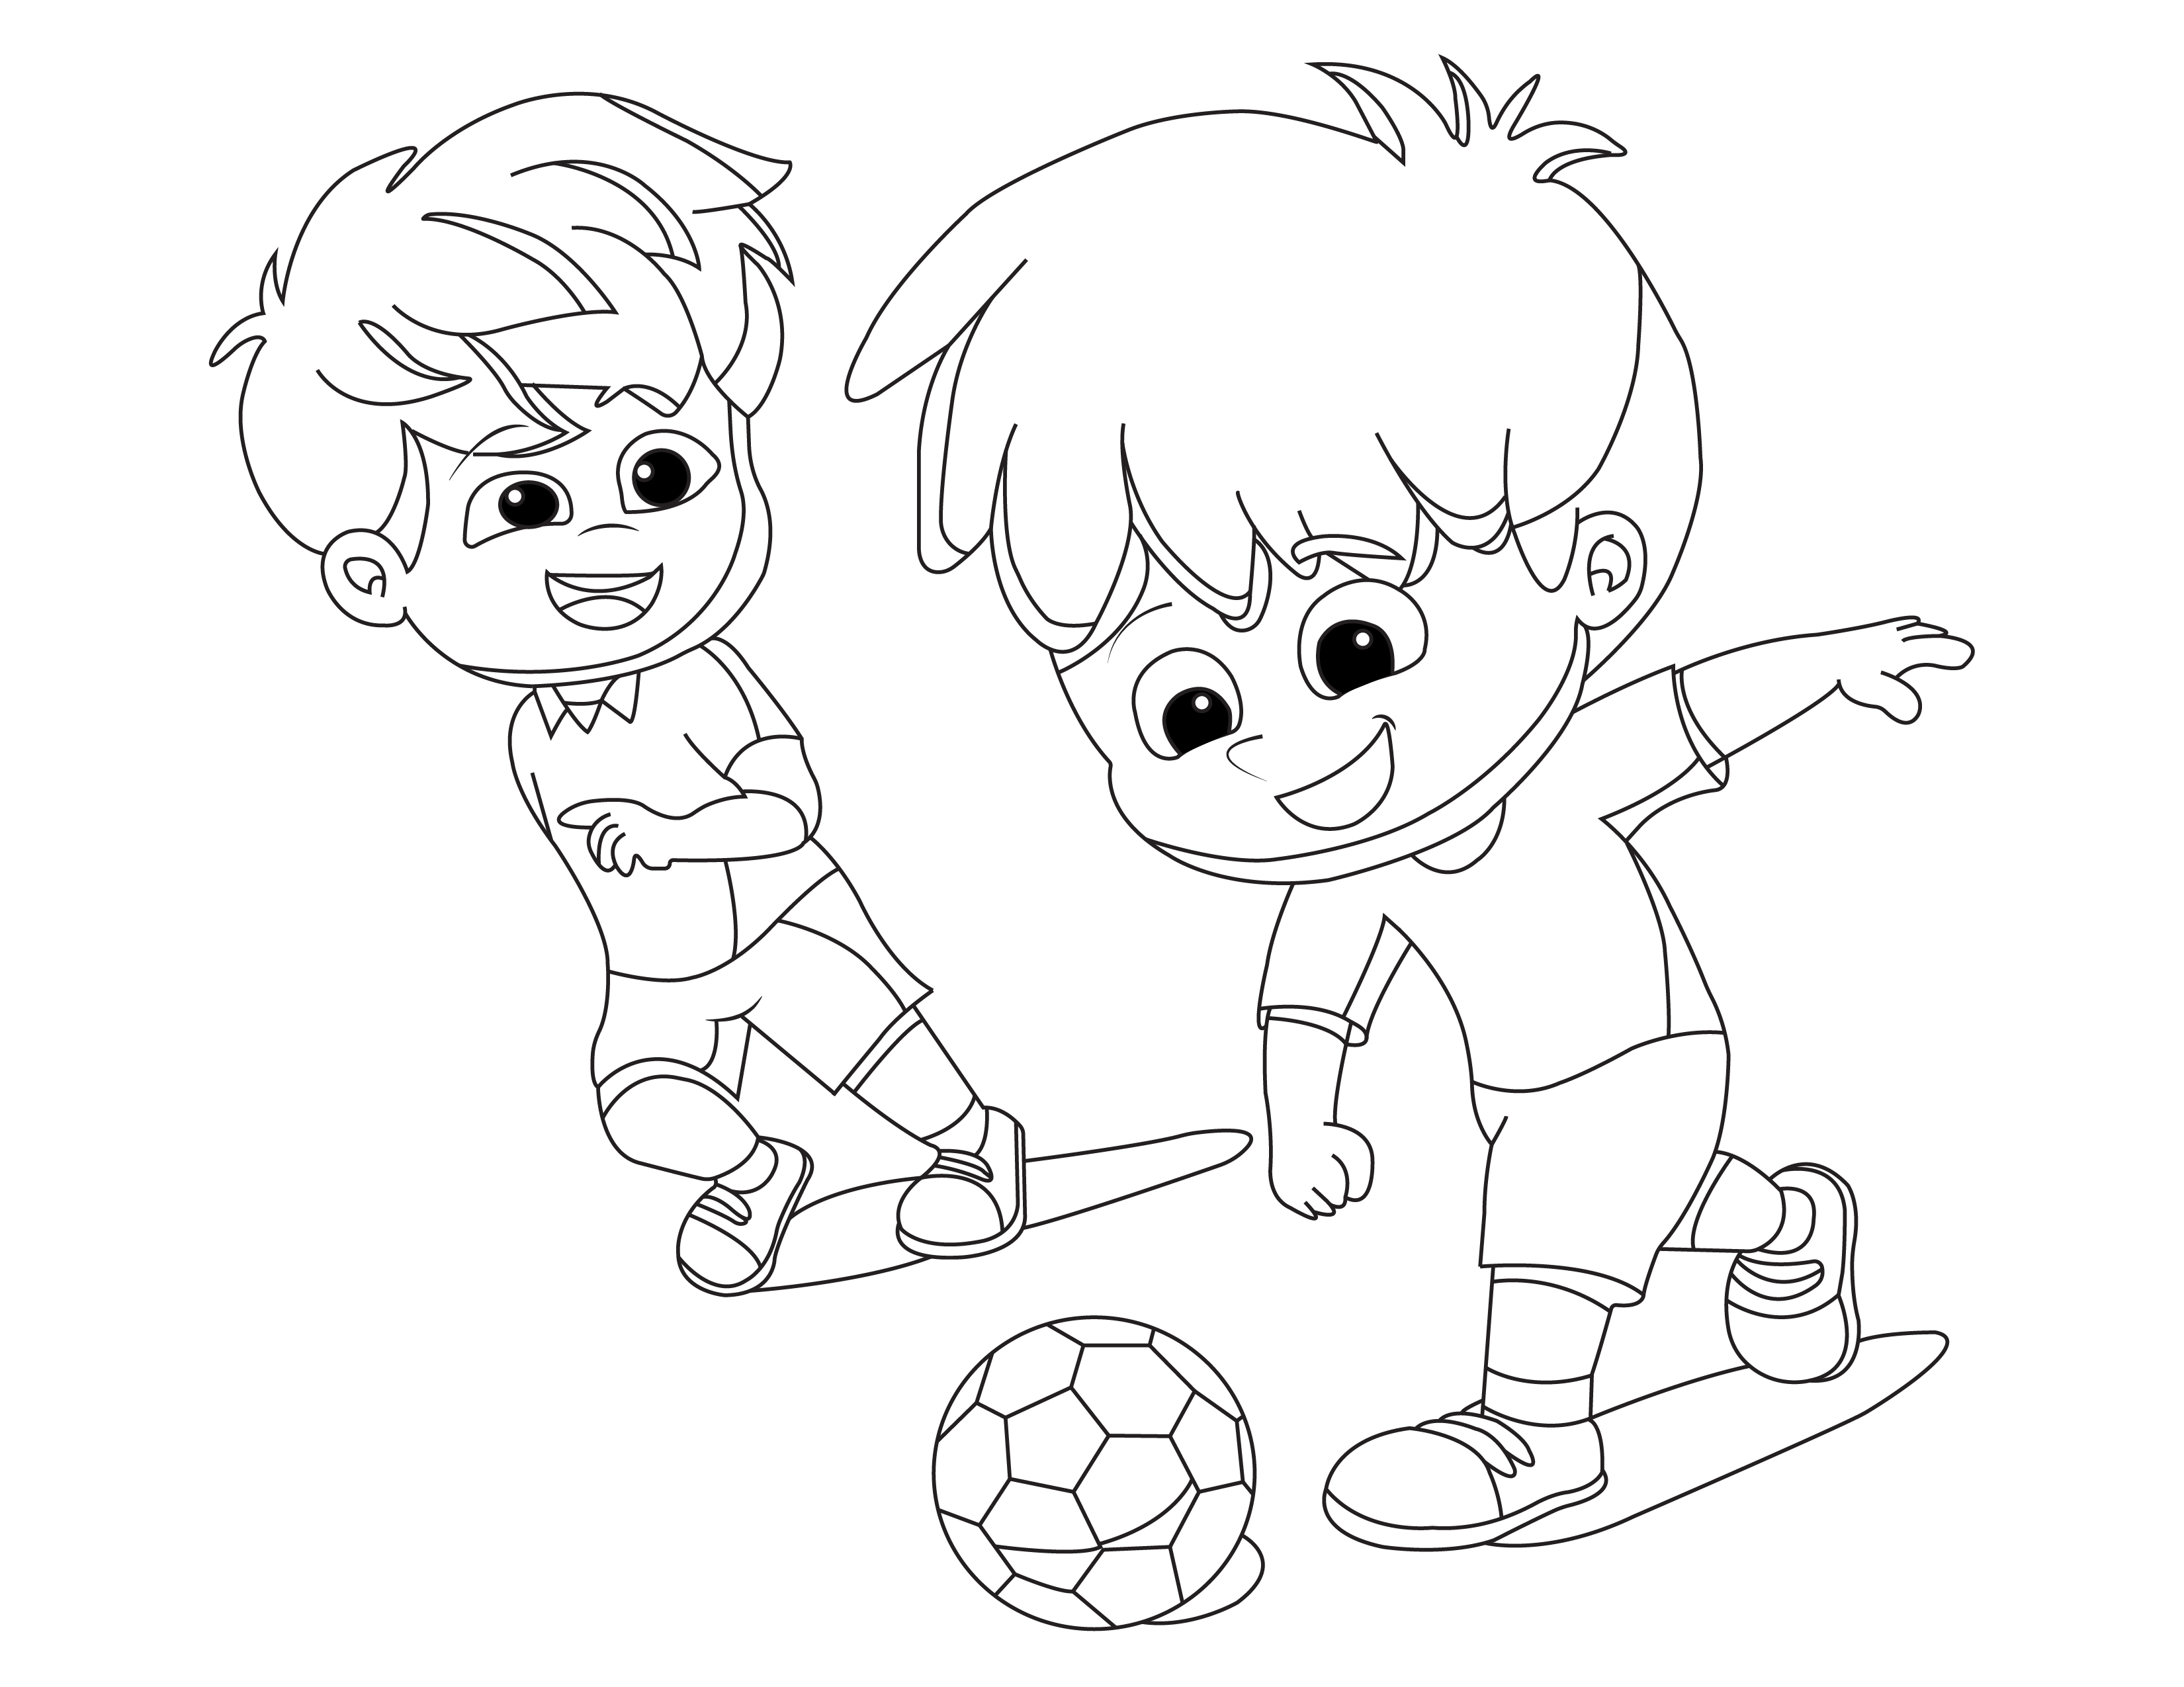 Målarbok av barn som spelar fotboll